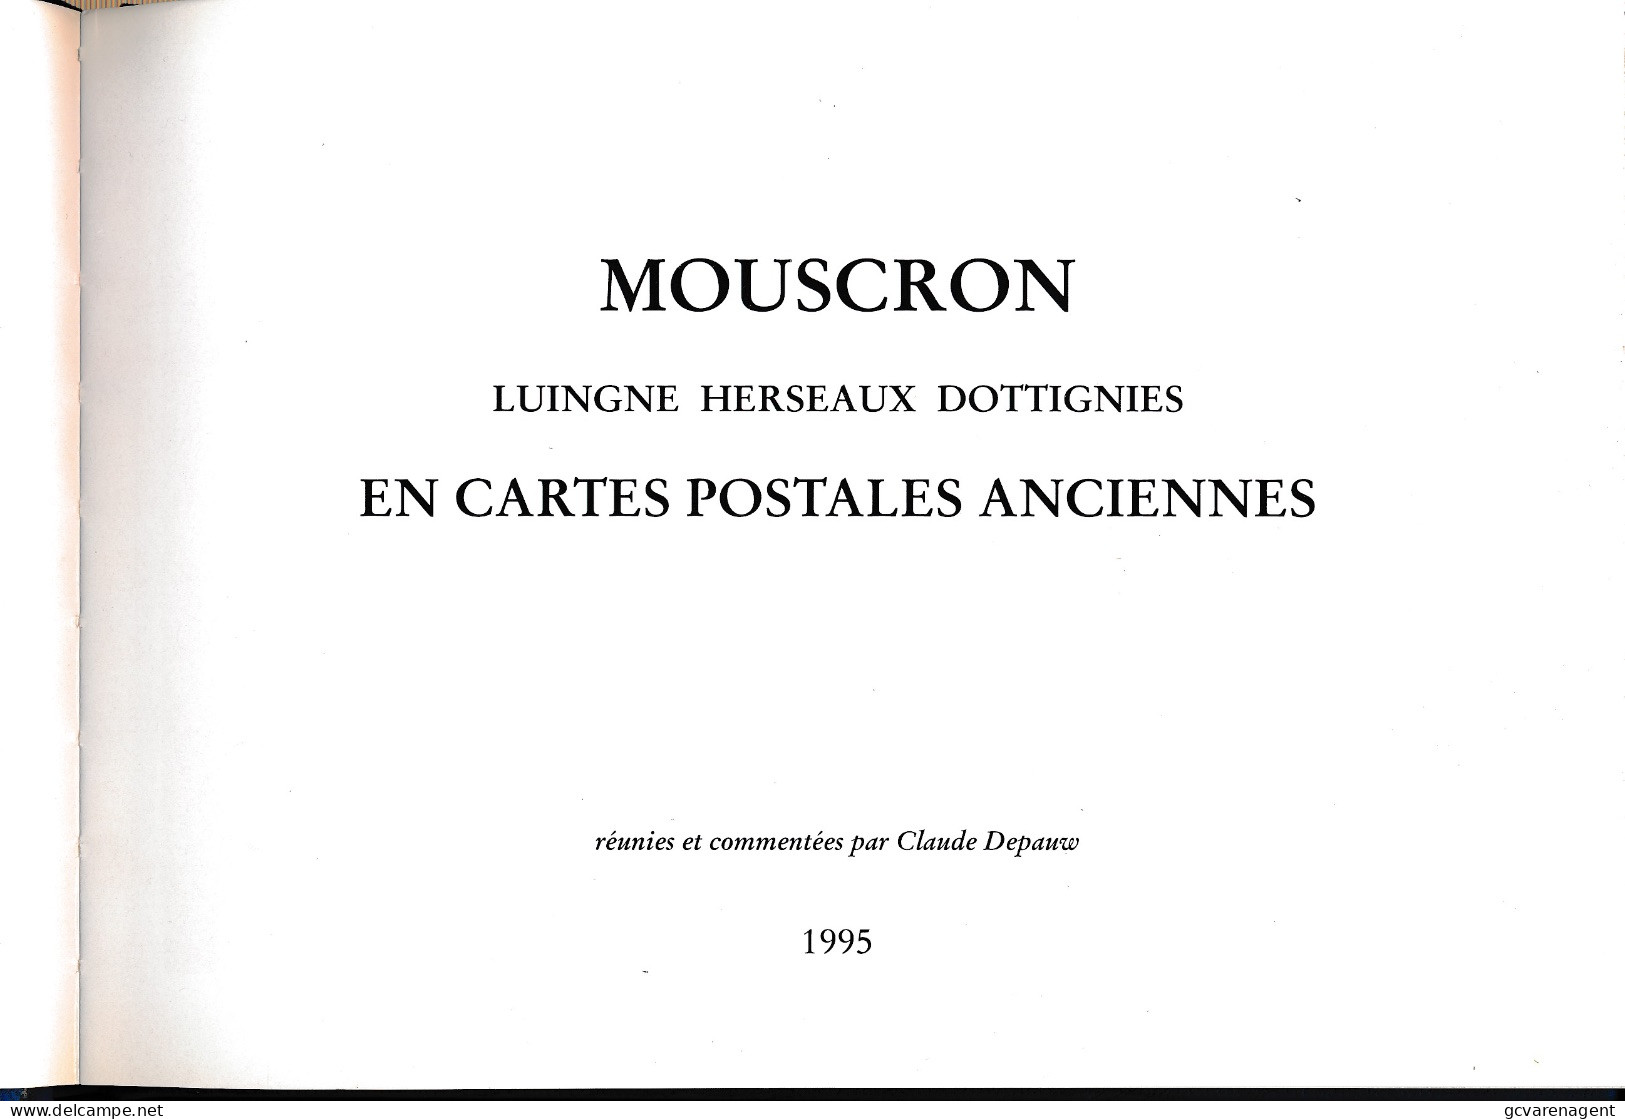 MOUSCRON  LUIGNE HERSEAUX DOTTIGNIES   TRES BON ETAT  22 X 16 X 1.5 CM   VOIR SCANS - Mouscron - Möskrön